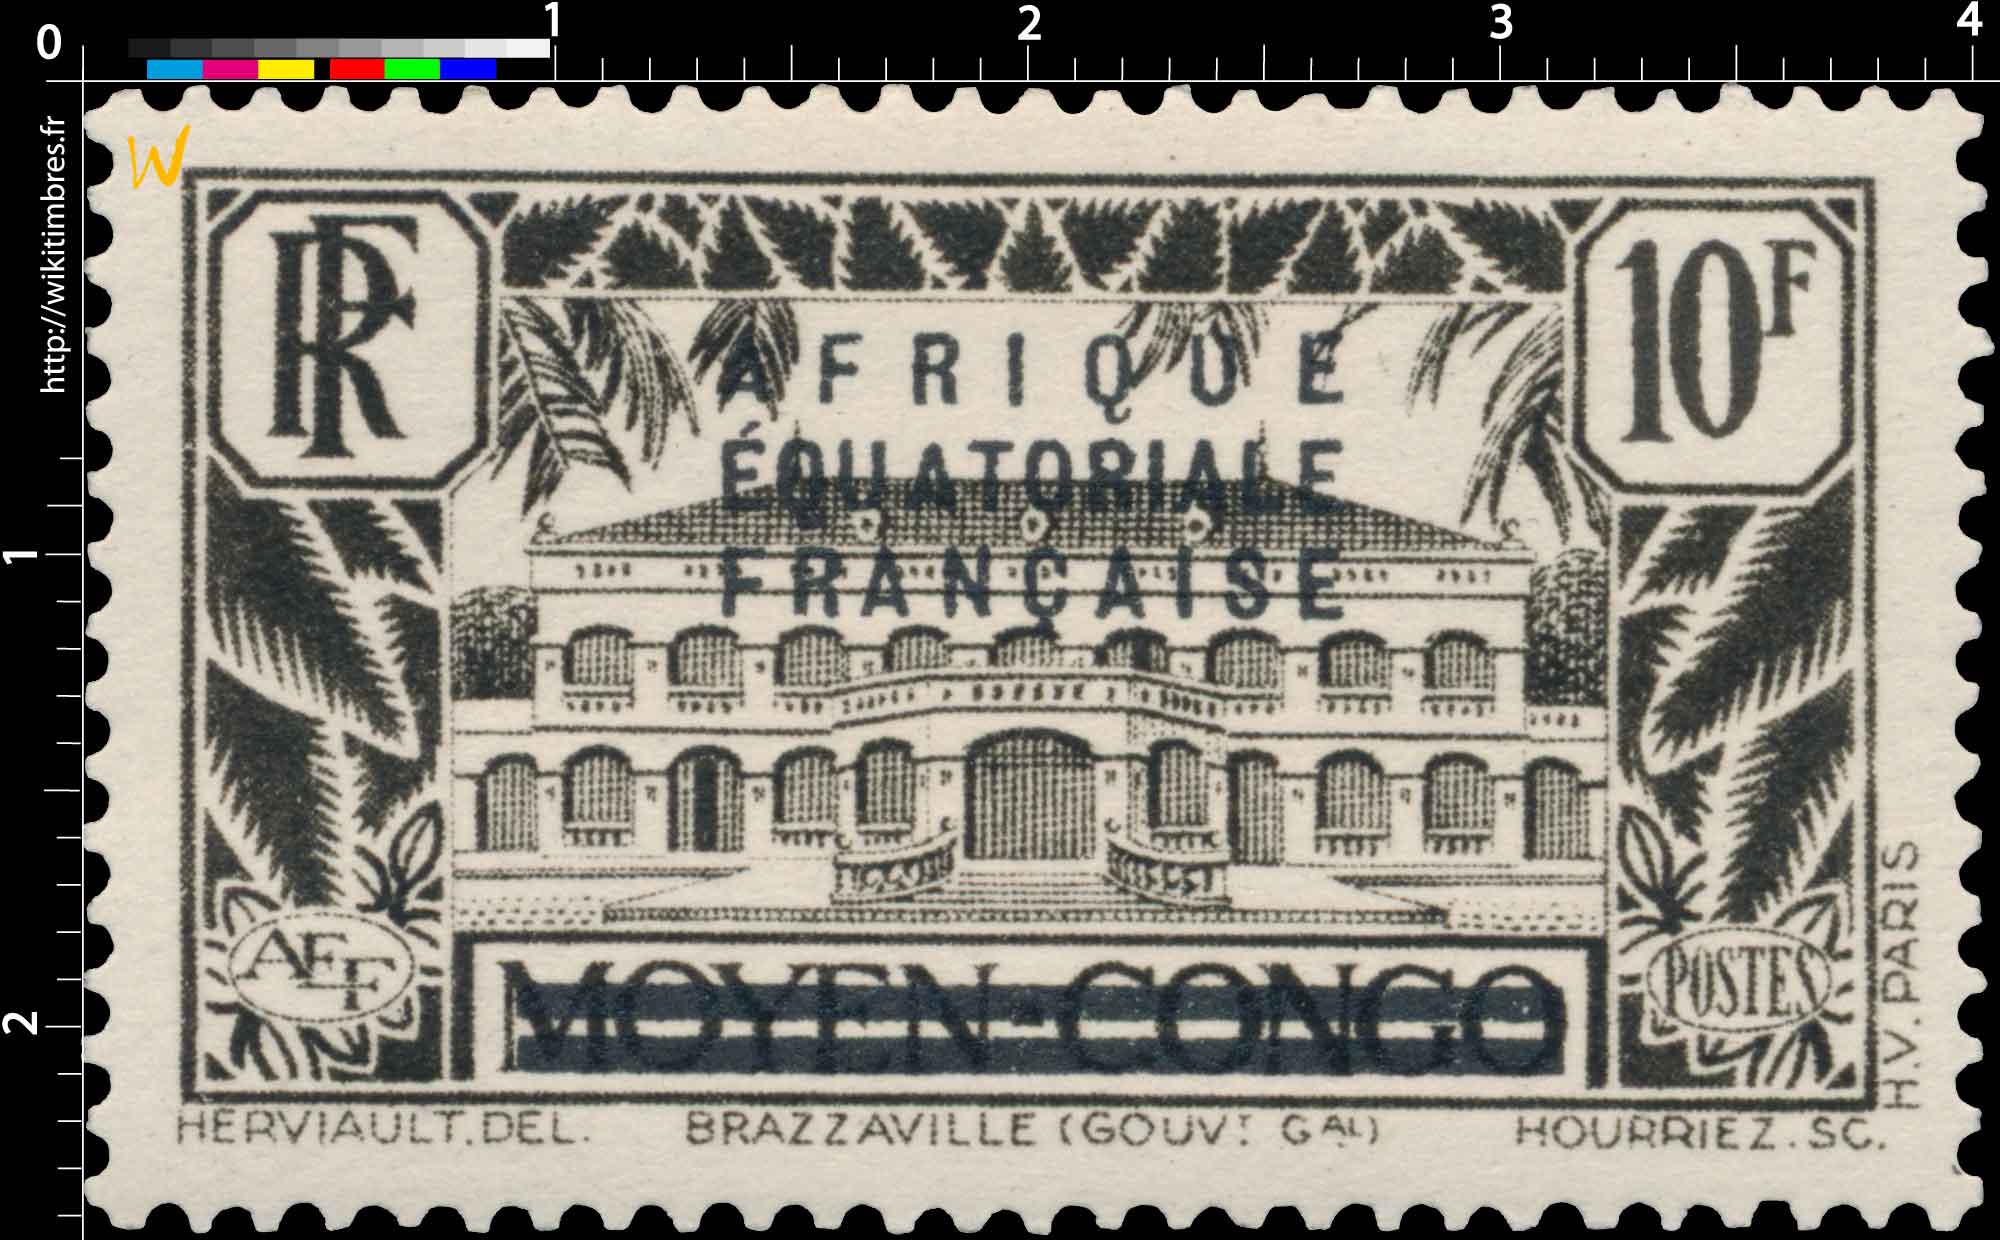 Brazzaville (GOUV.Gal) moyen Congo Afrique Équatoriale Française